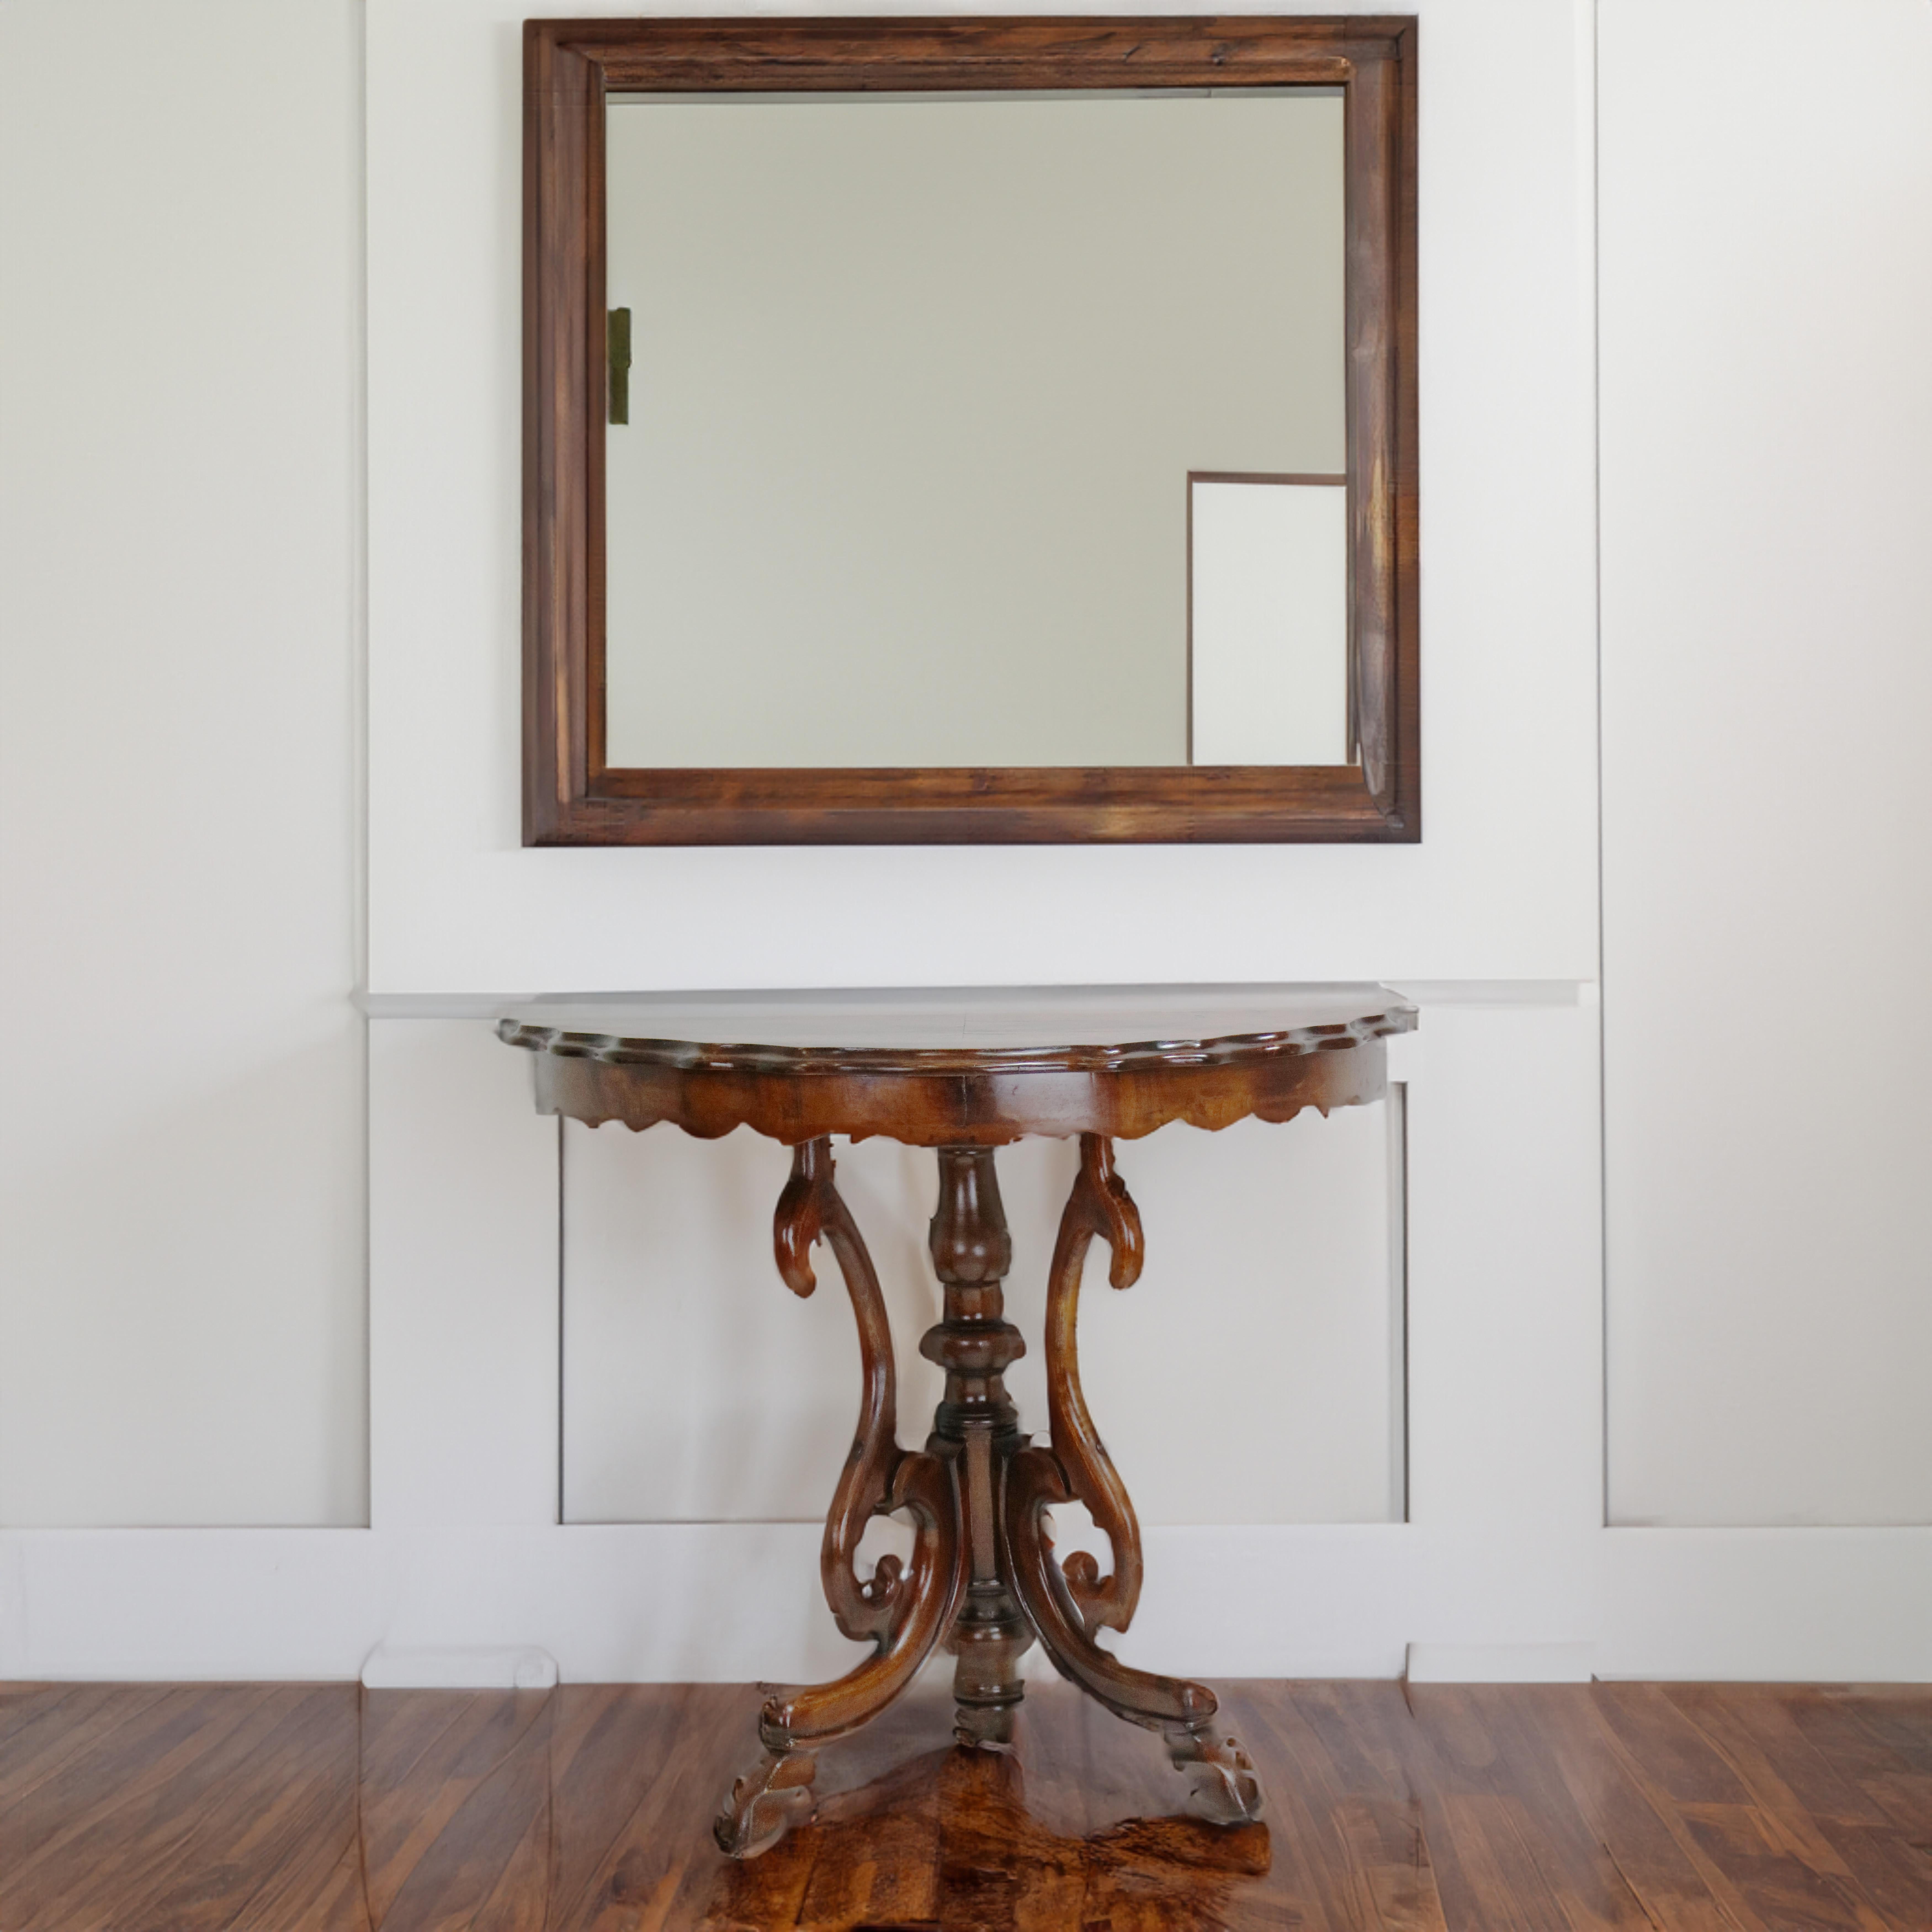 Dieser schöne spätviktorianische Konsolentisch eignet sich unter einem Spiegel in einem Vorzimmer, Sie können eine Vase oder andere dekorative Gegenstände darauf stellen. Der Tisch wurde von Hand geschnitzt.